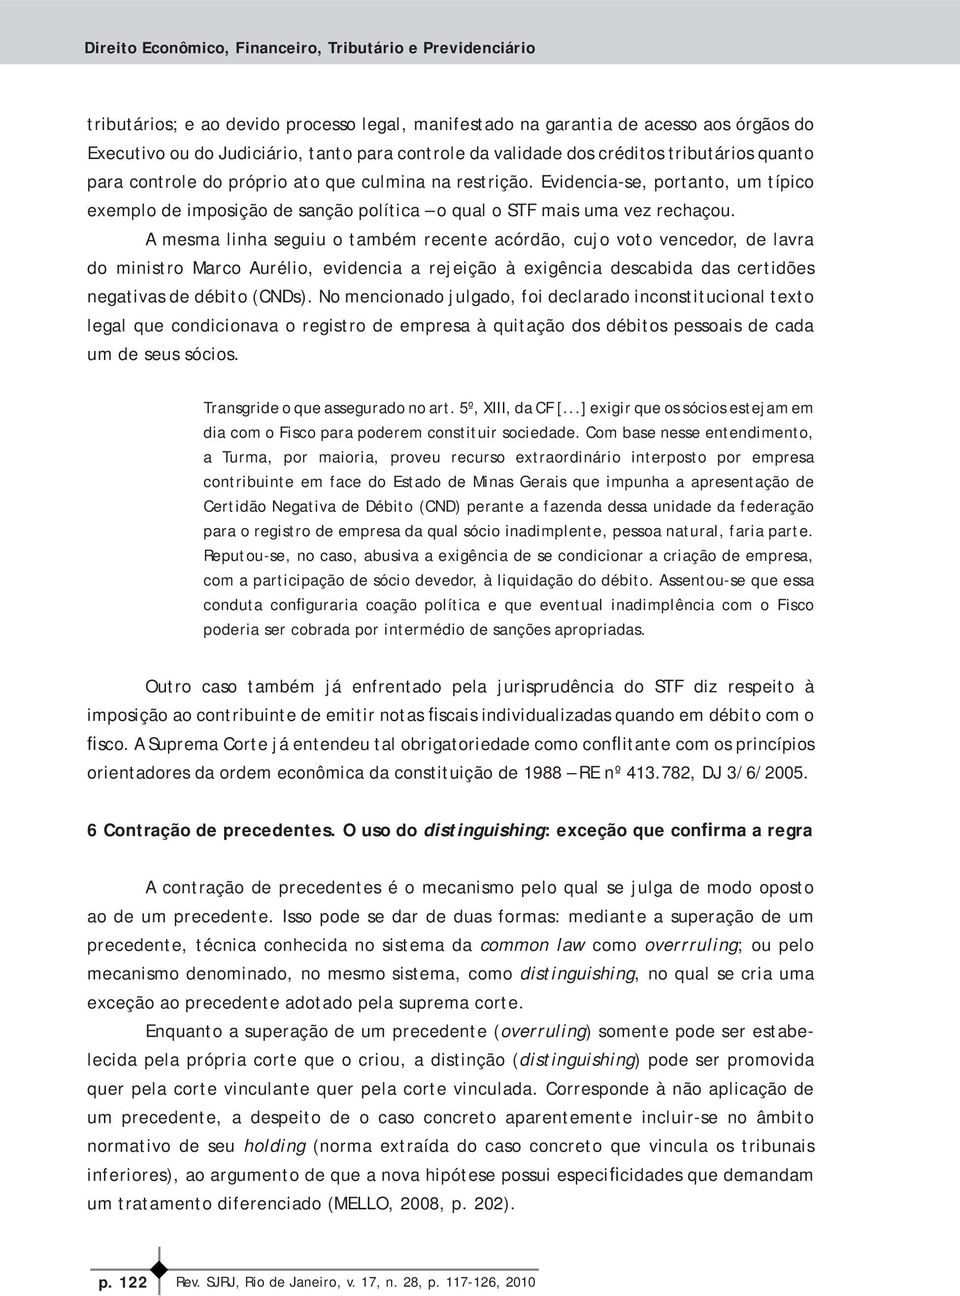 A mesma linha seguiu o também recente acórdão, cujo voto vencedor, de lavra do ministro Marco Aurélio, evidencia a rejeição à exigência descabida das certidões negativas de débito (CNDs).